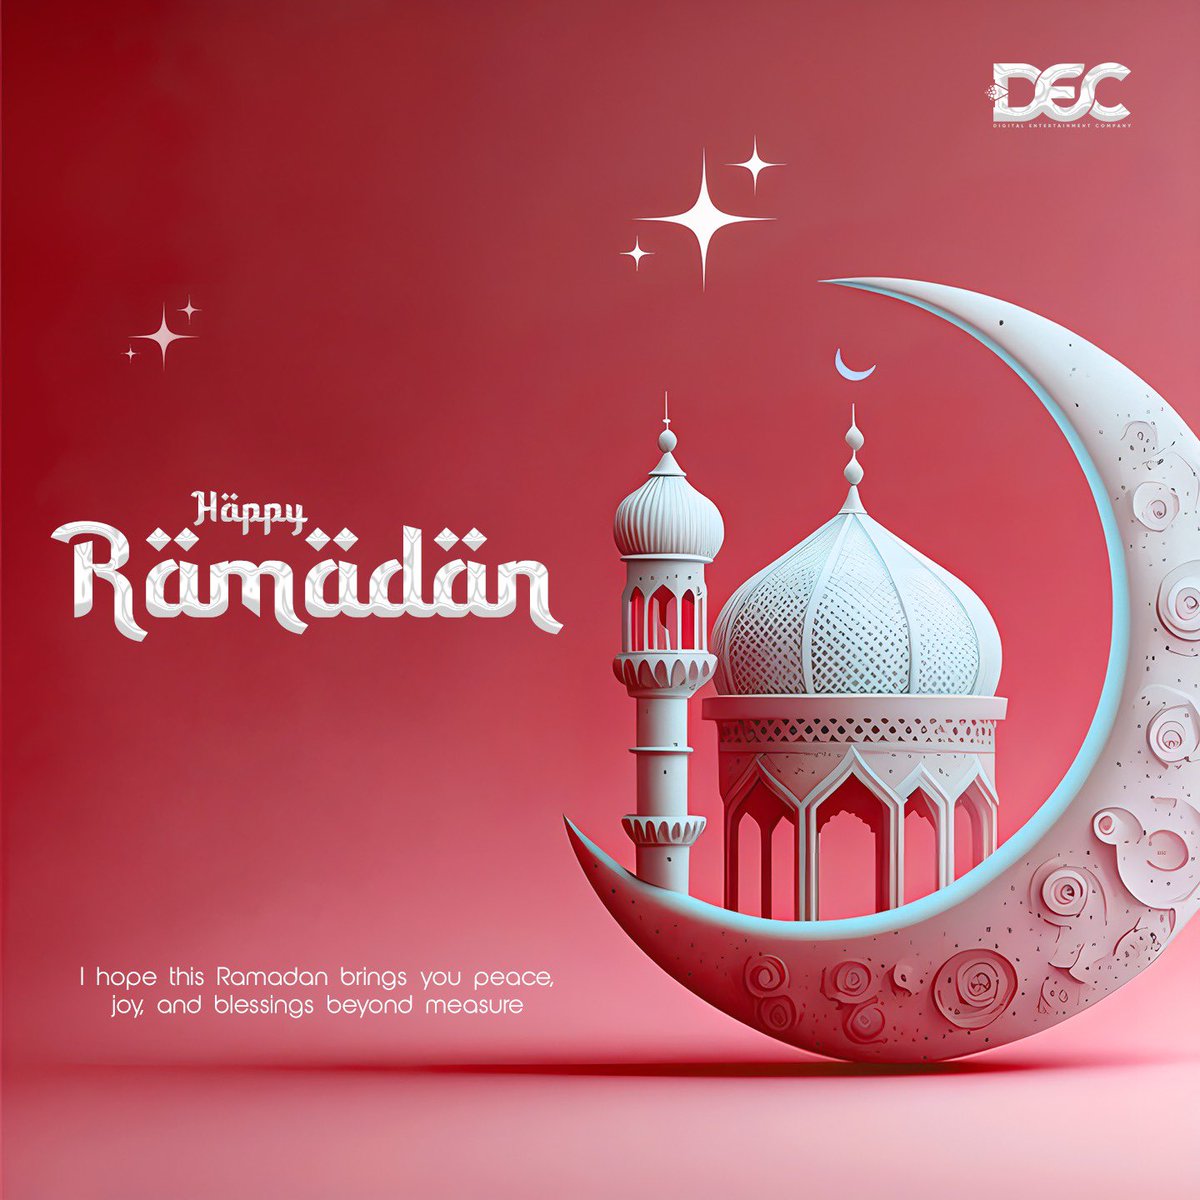 May this Ramzan bring you peace, prosperity, and happiness✨Ramadan Mubarak🌙 #Ramadan